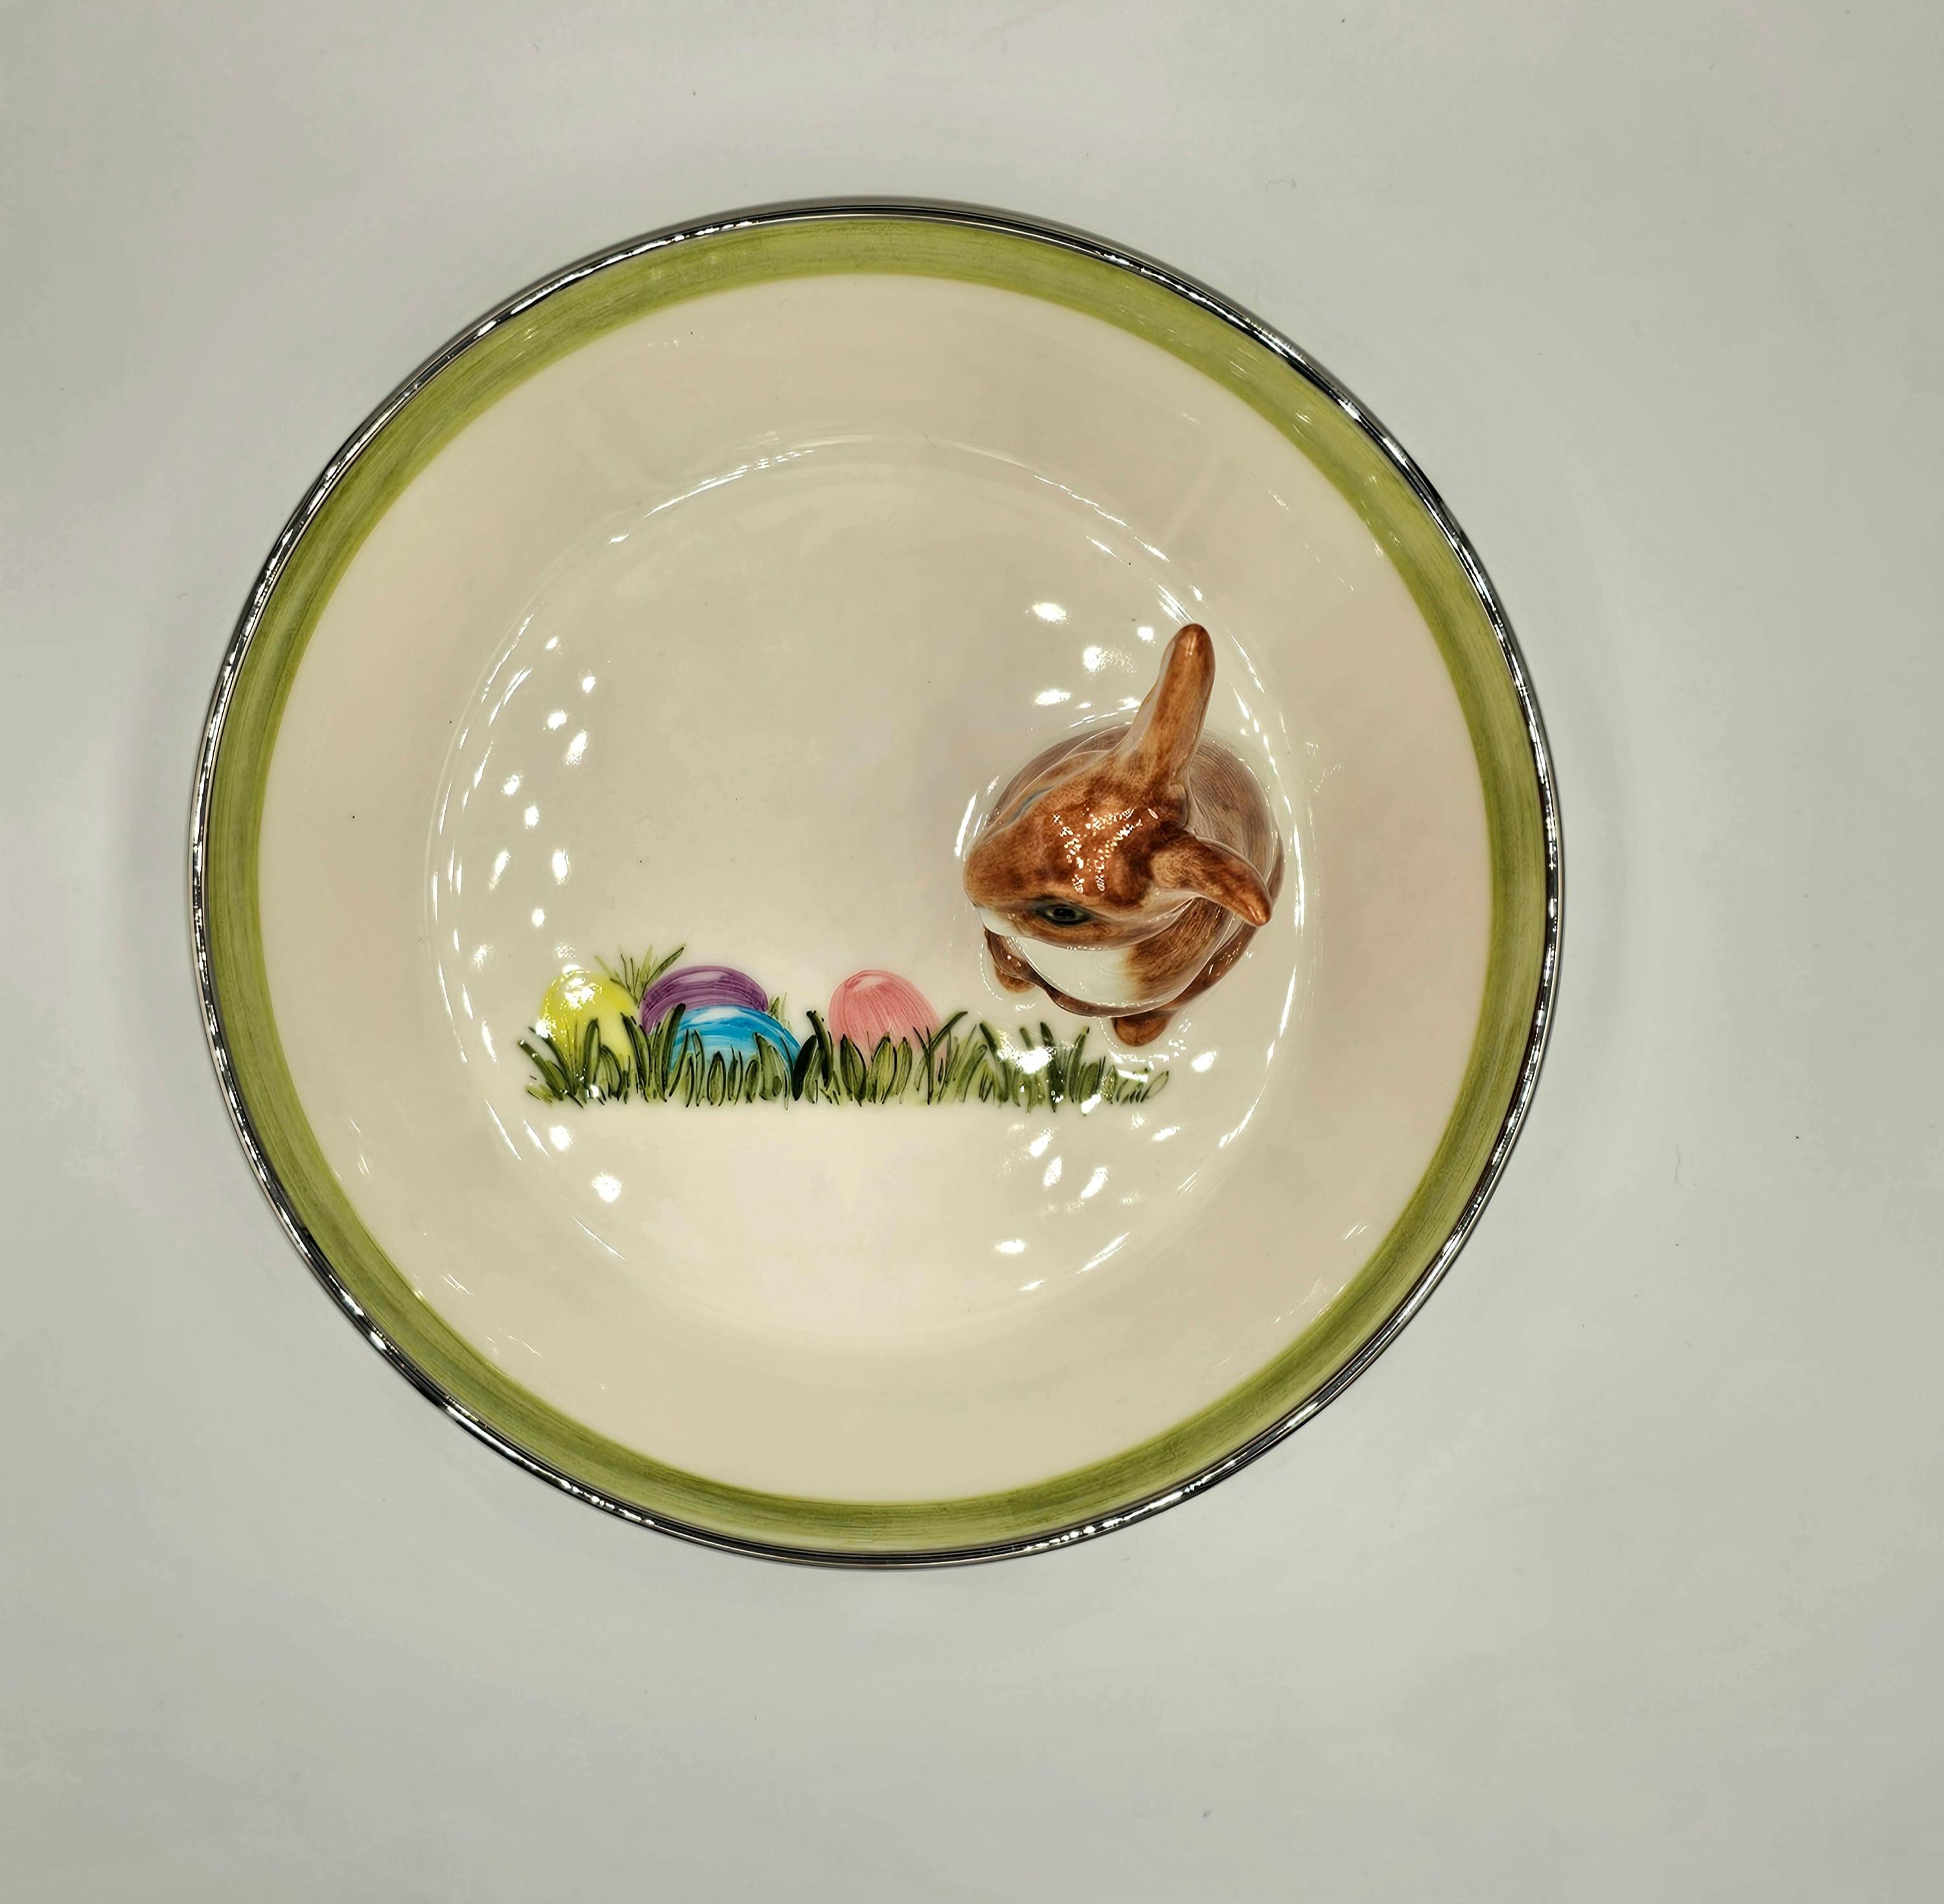 Bol en porcelaine entièrement fabriqué à la main avec une figure de lièvre de Pâques peinte de façon naturaliste avec des taches brunes. Le lapin est assis sur le côté du bol pour décorer les noix ou les bonbons autour.
Le plat à l'intérieur est